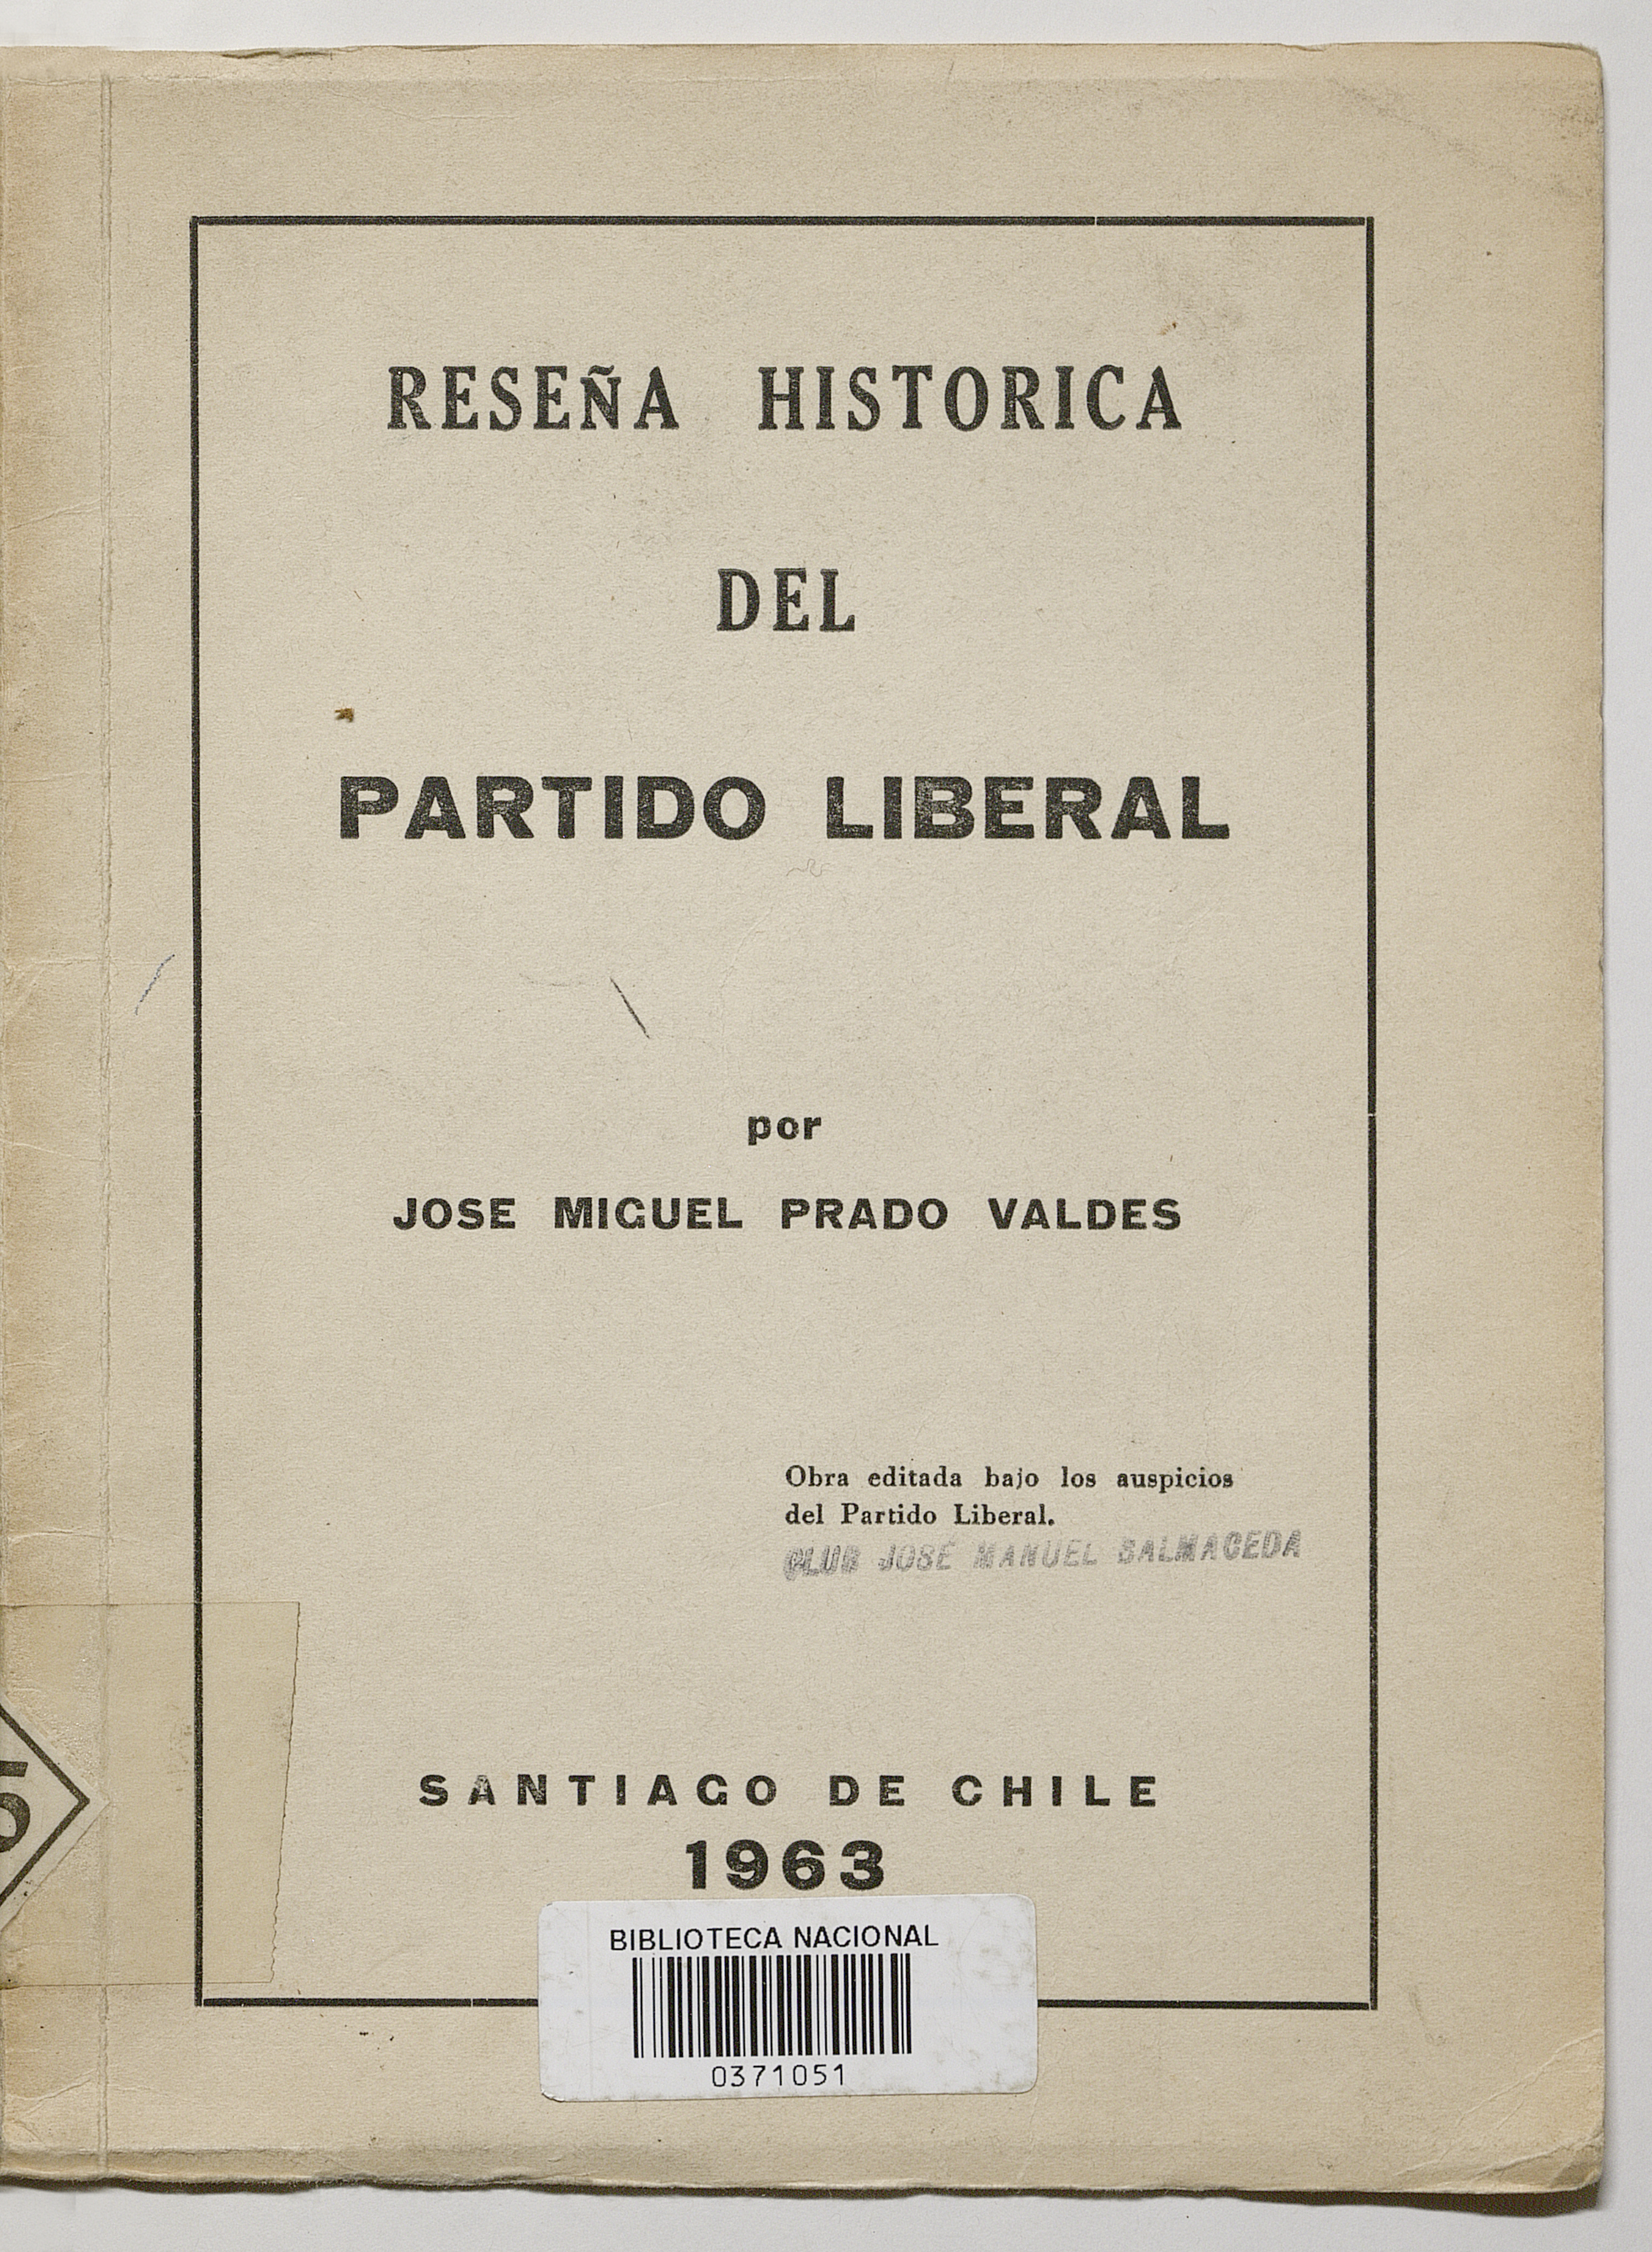 Pedro Valdés José Miguel, Reseña Histórica del Partido Liberal, SN, Santiago de Chile, 1963